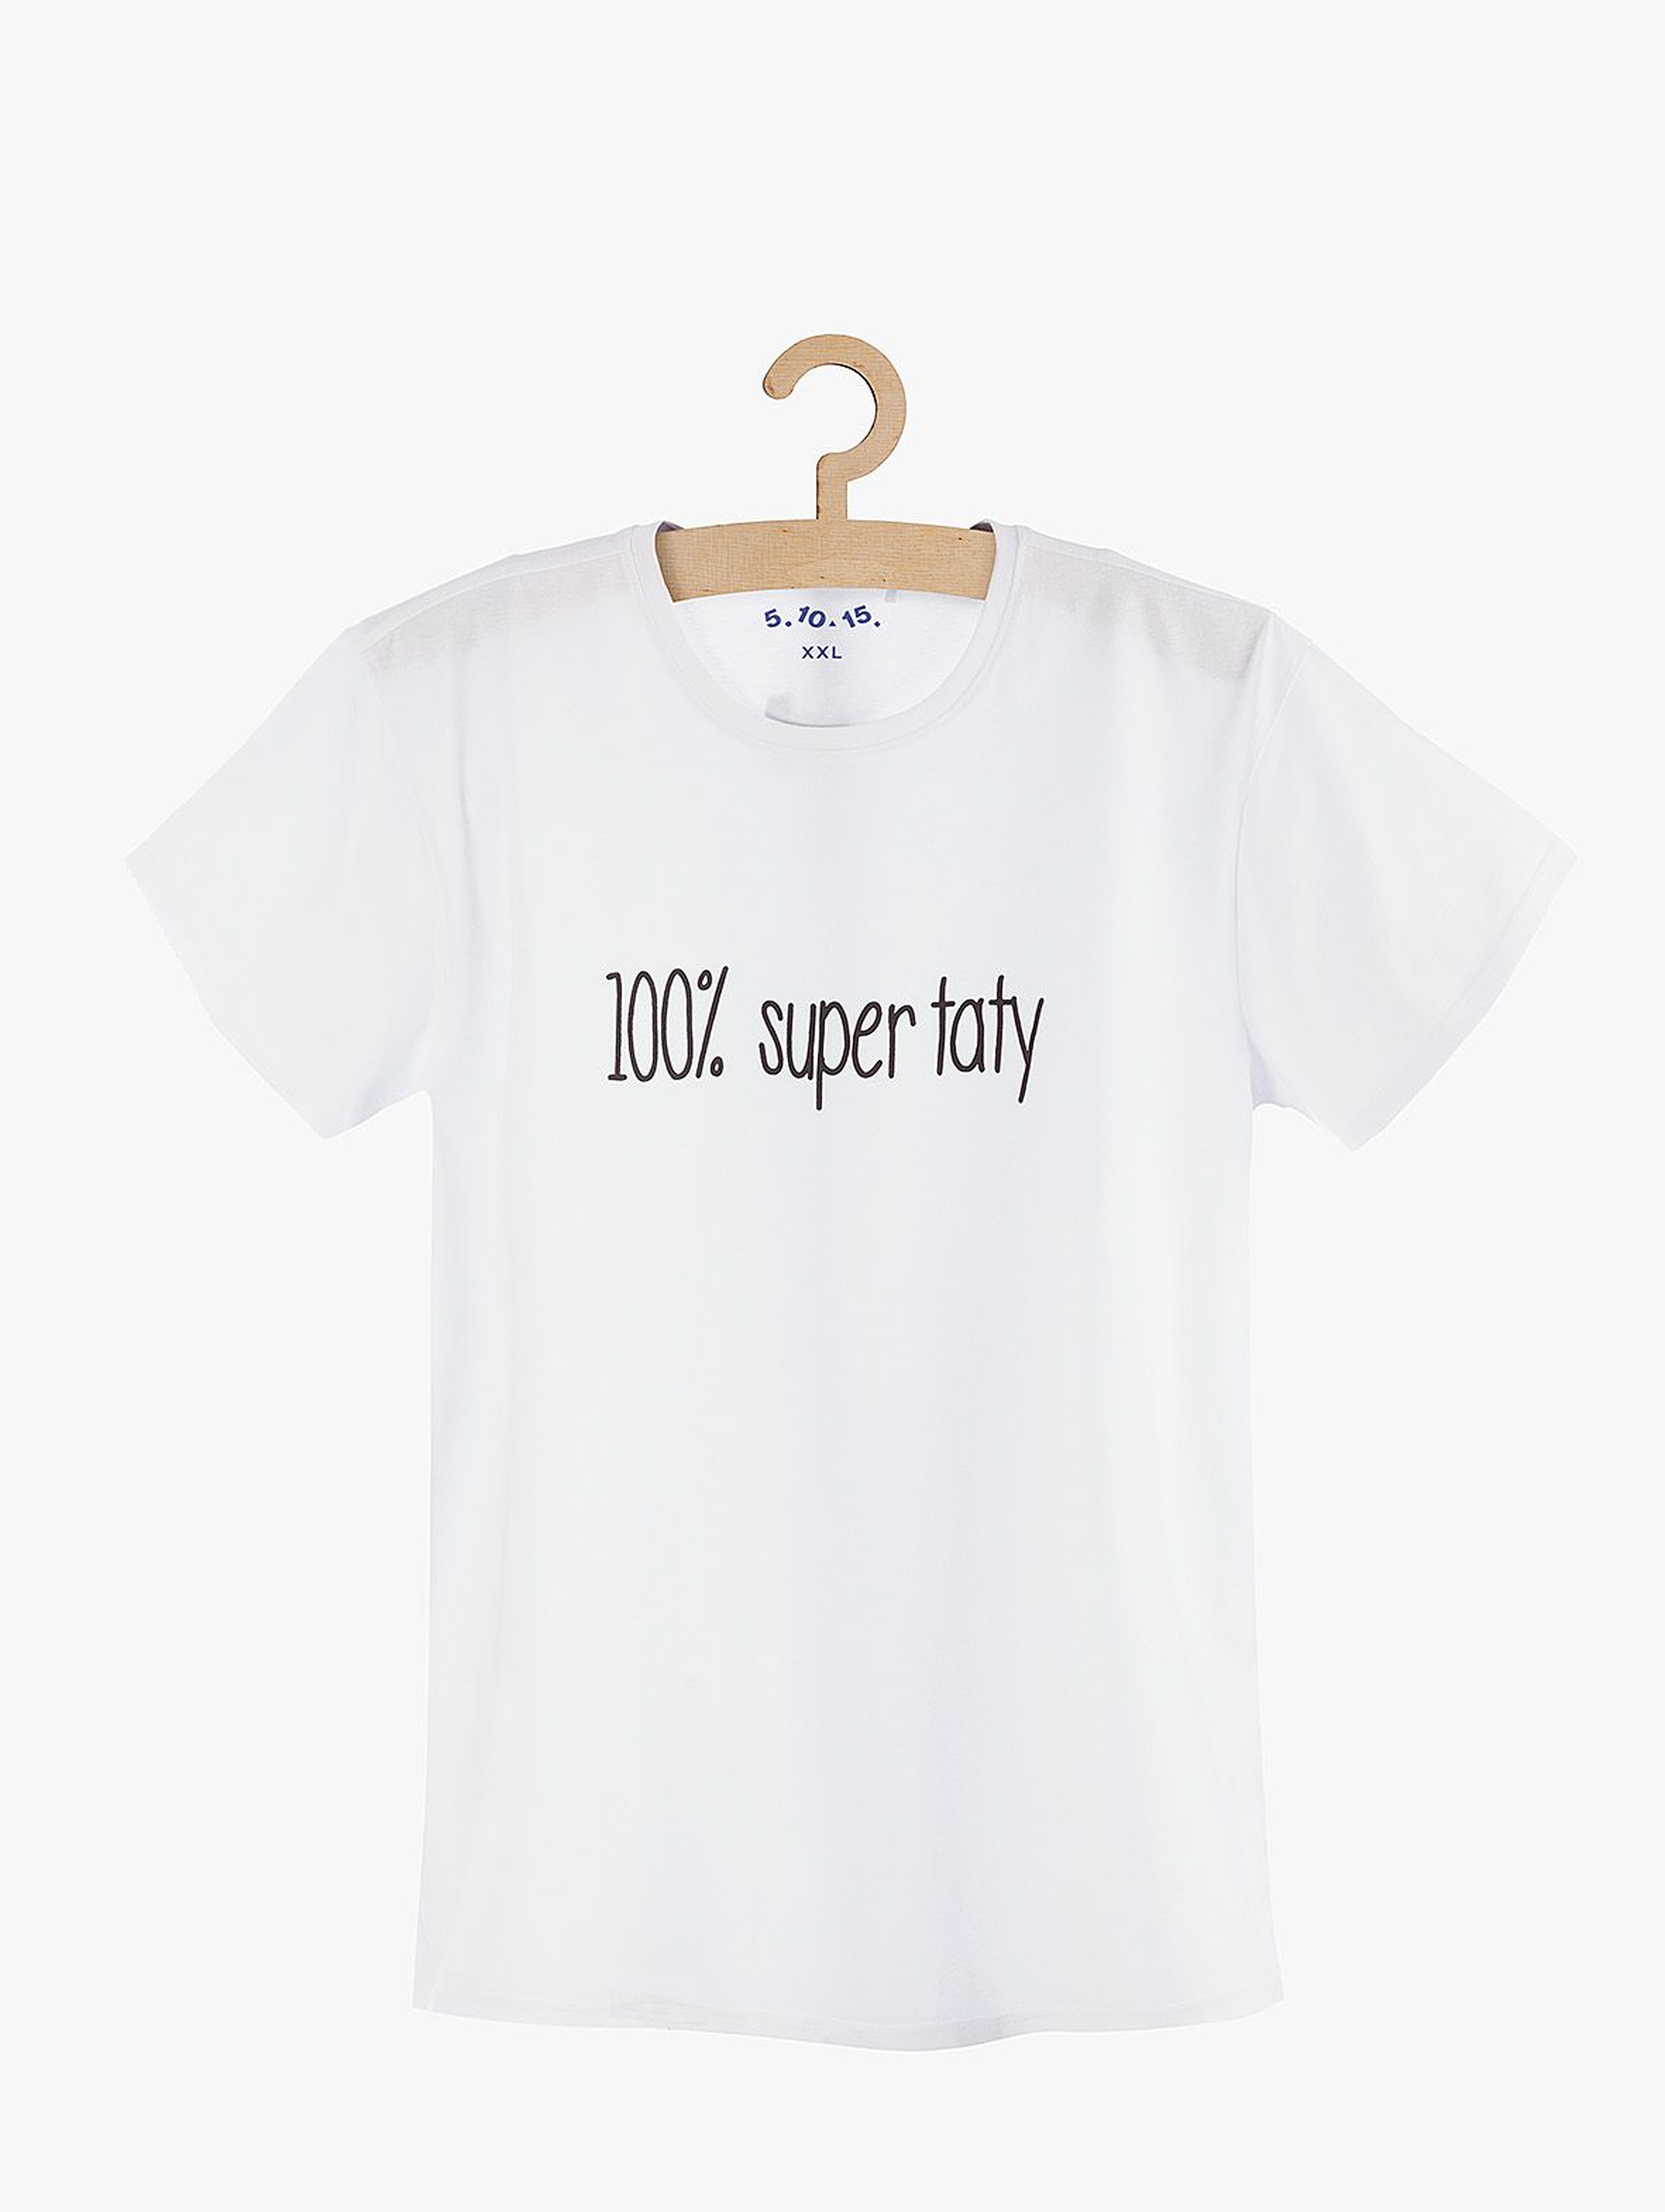 T-shirt męski biały z napisem 100% Super taty